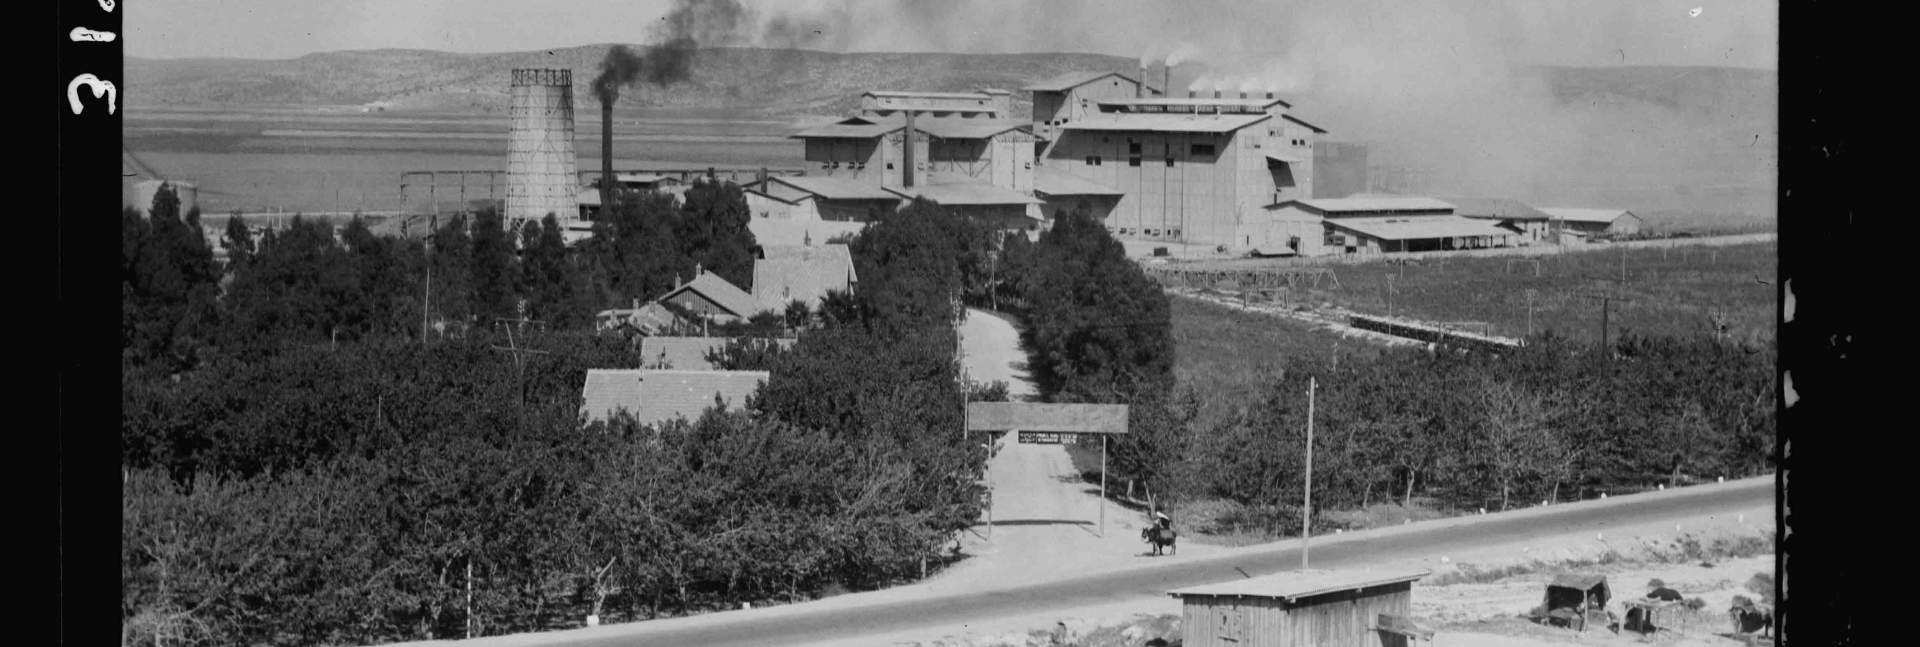  מפעל "נשר" באזור חיפה, 1925. מפעל המלט הראשון במזרח התיכון 